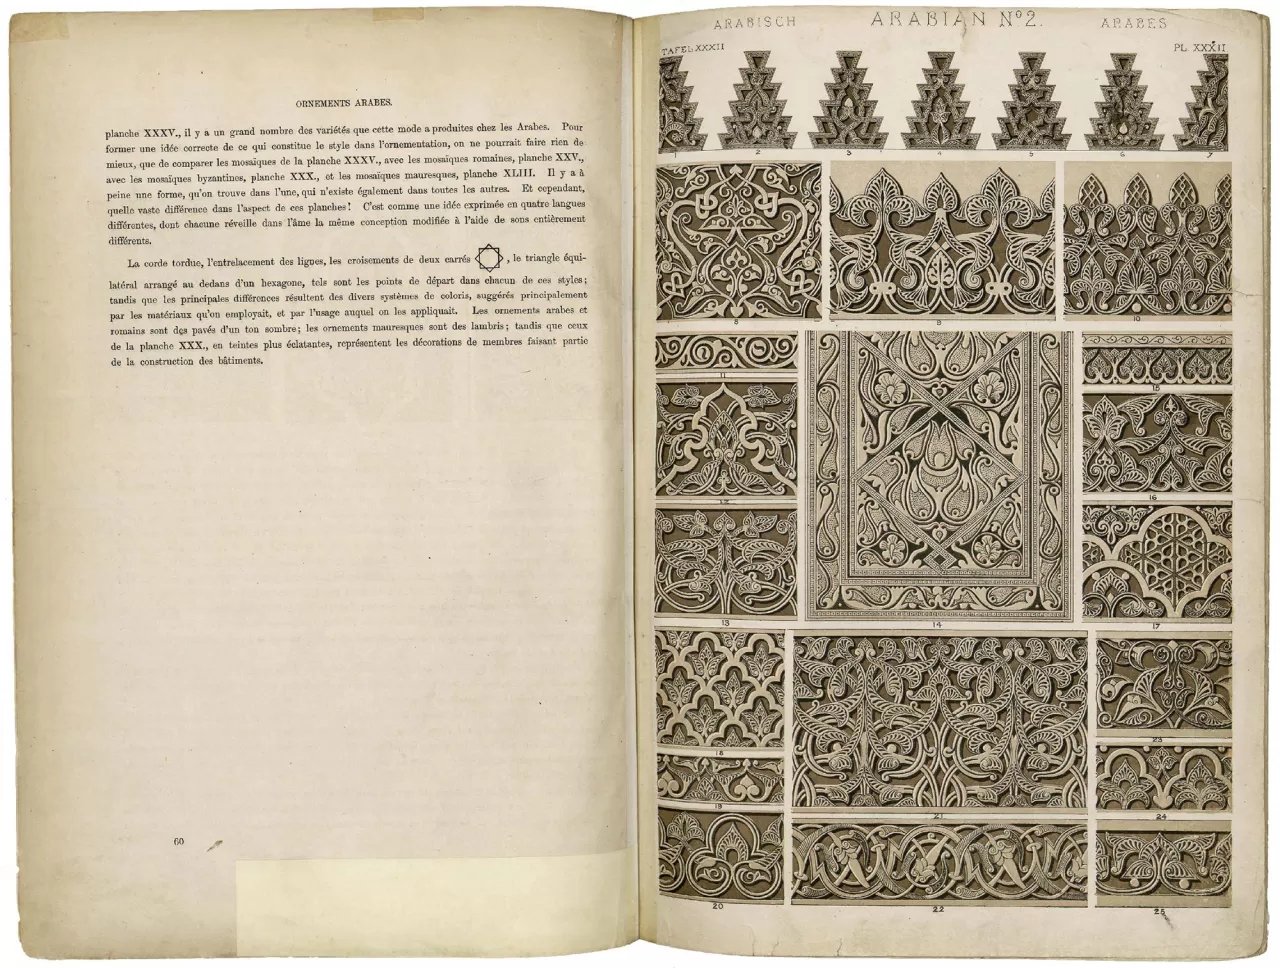 Arabian no. 2, Owen Jones Grammaire de l’ornement, pl. 32 Day and Son, Ltd., London, 1865, Cartier Paris archives